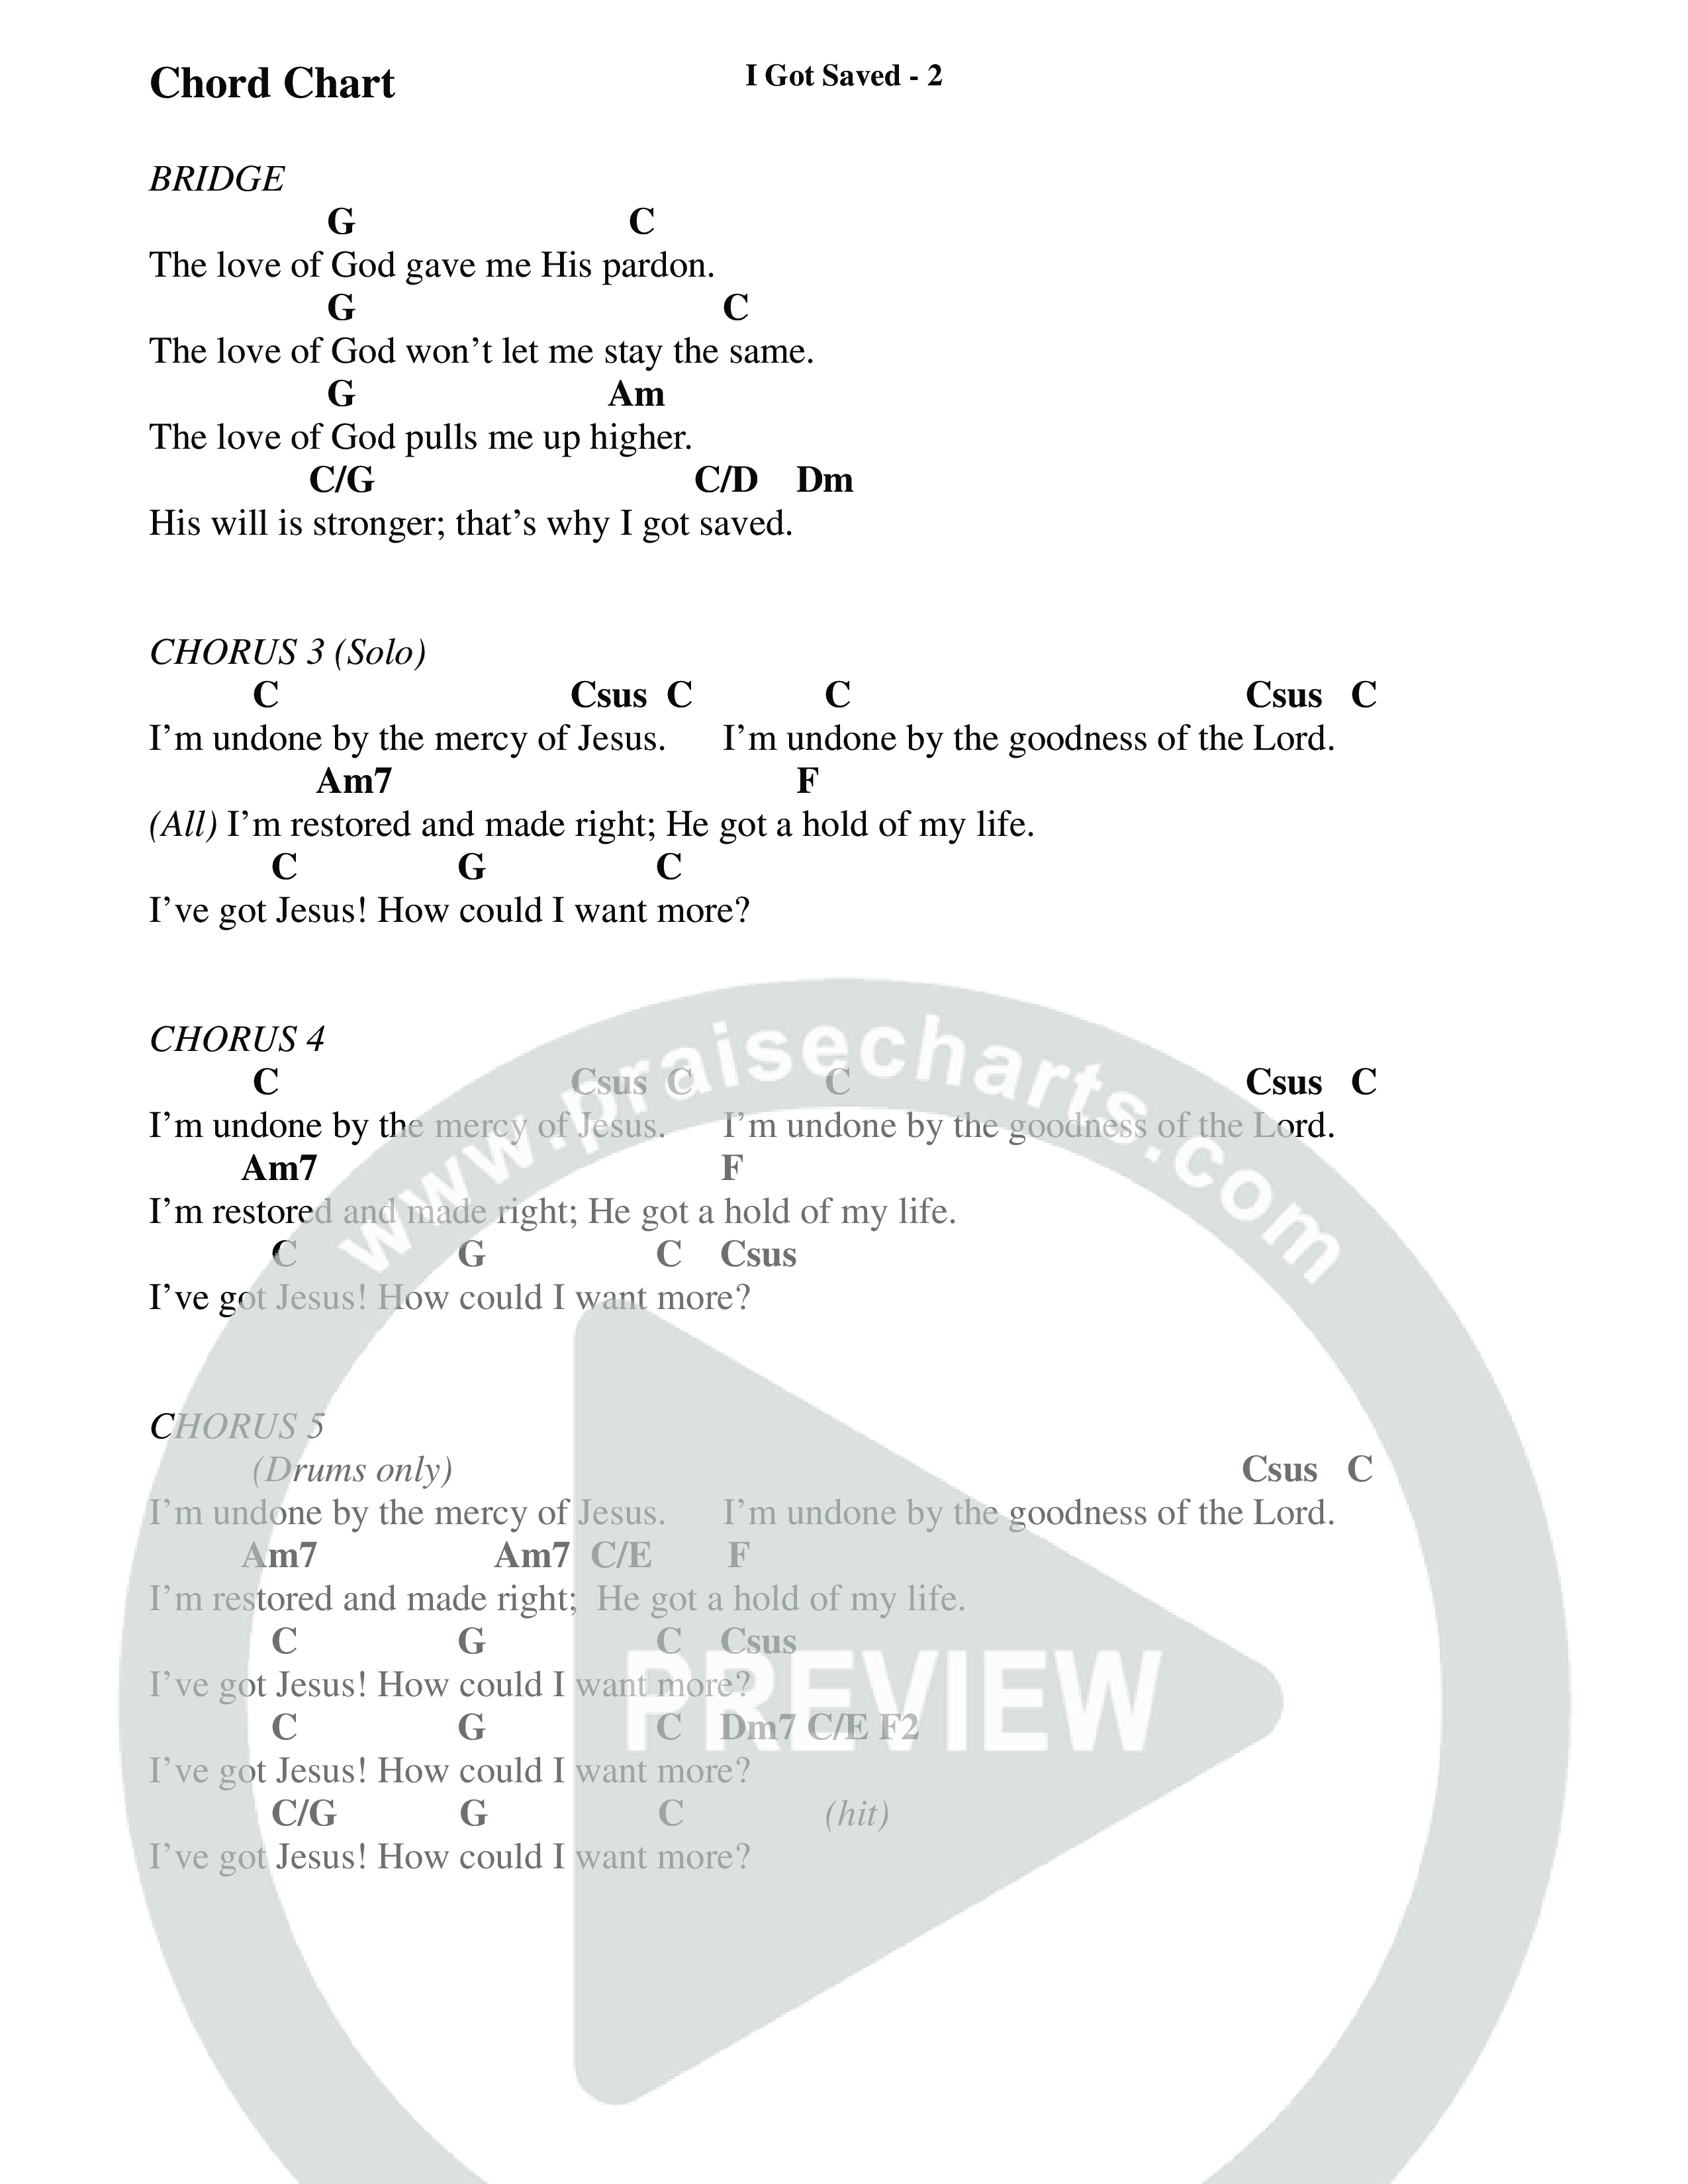 I Got Saved (Choral Anthem SATB) Chords & Lyrics (Prestonwood Worship / Prestonwood Choir / Arr. Carson Wagner)